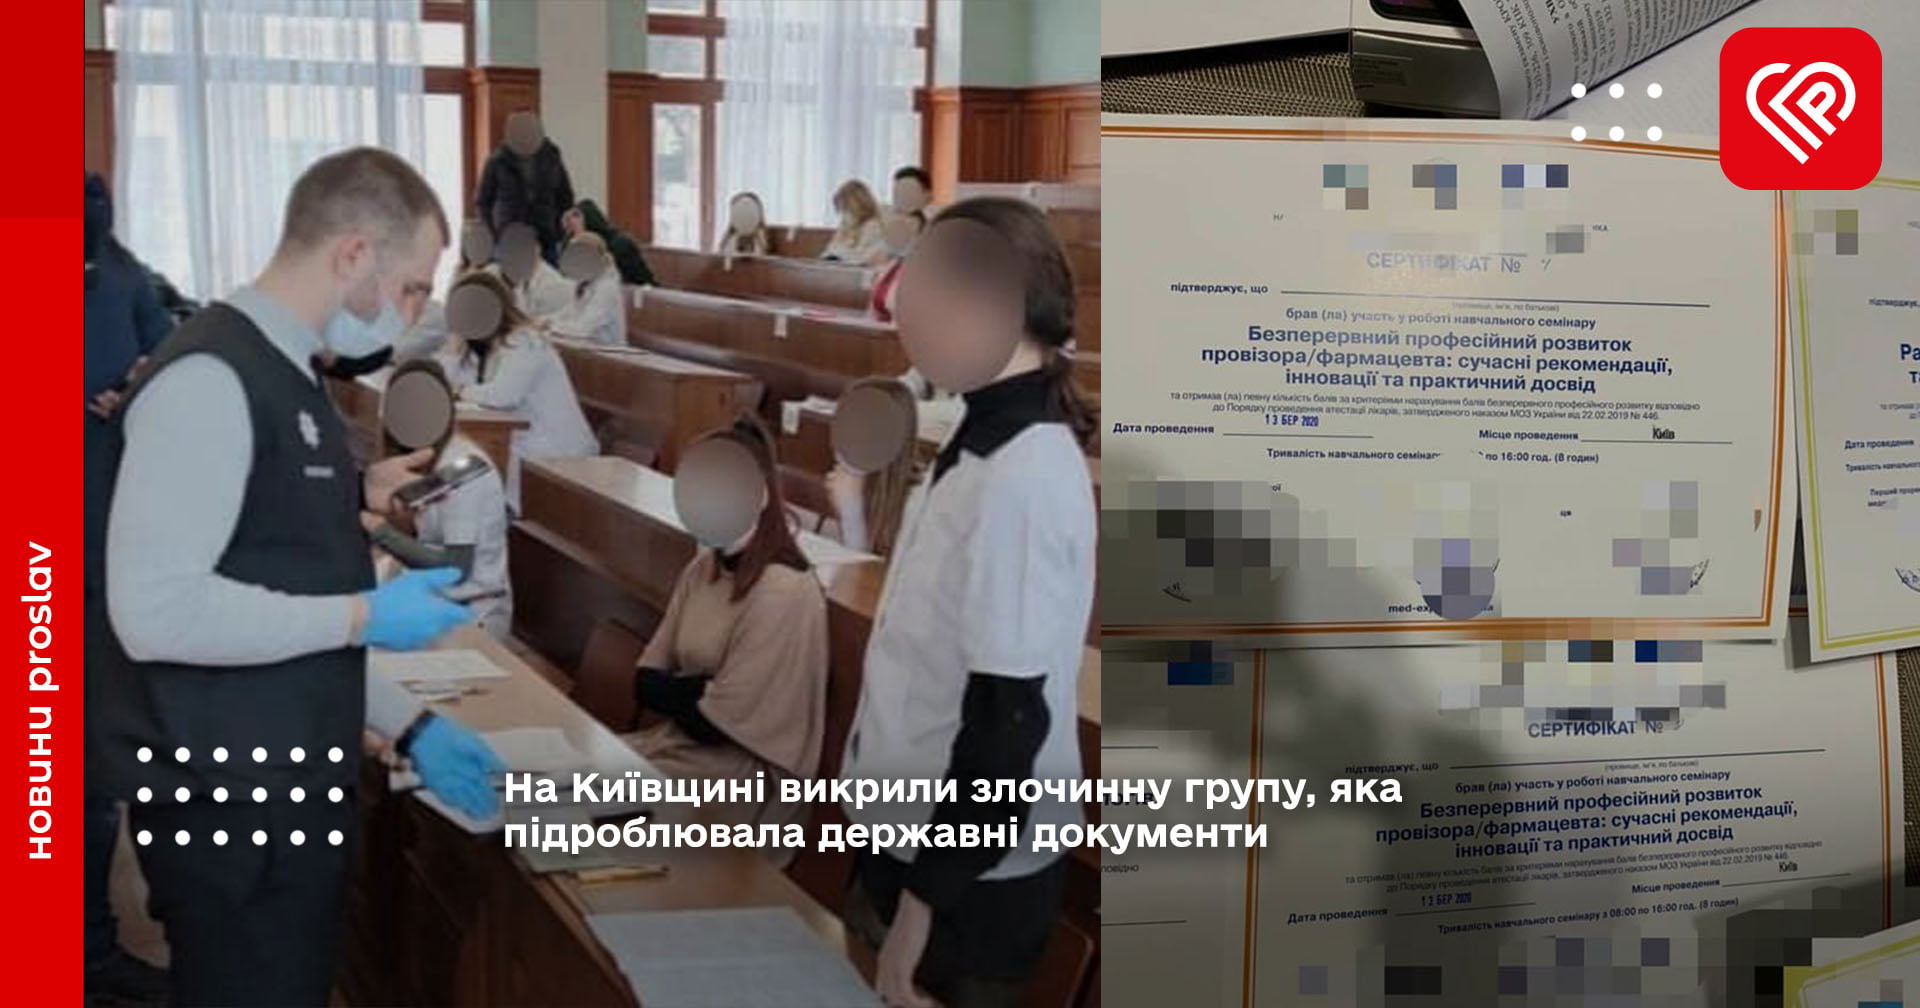 На Київщині викрили злочинну групу, яка підроблювала державні документи